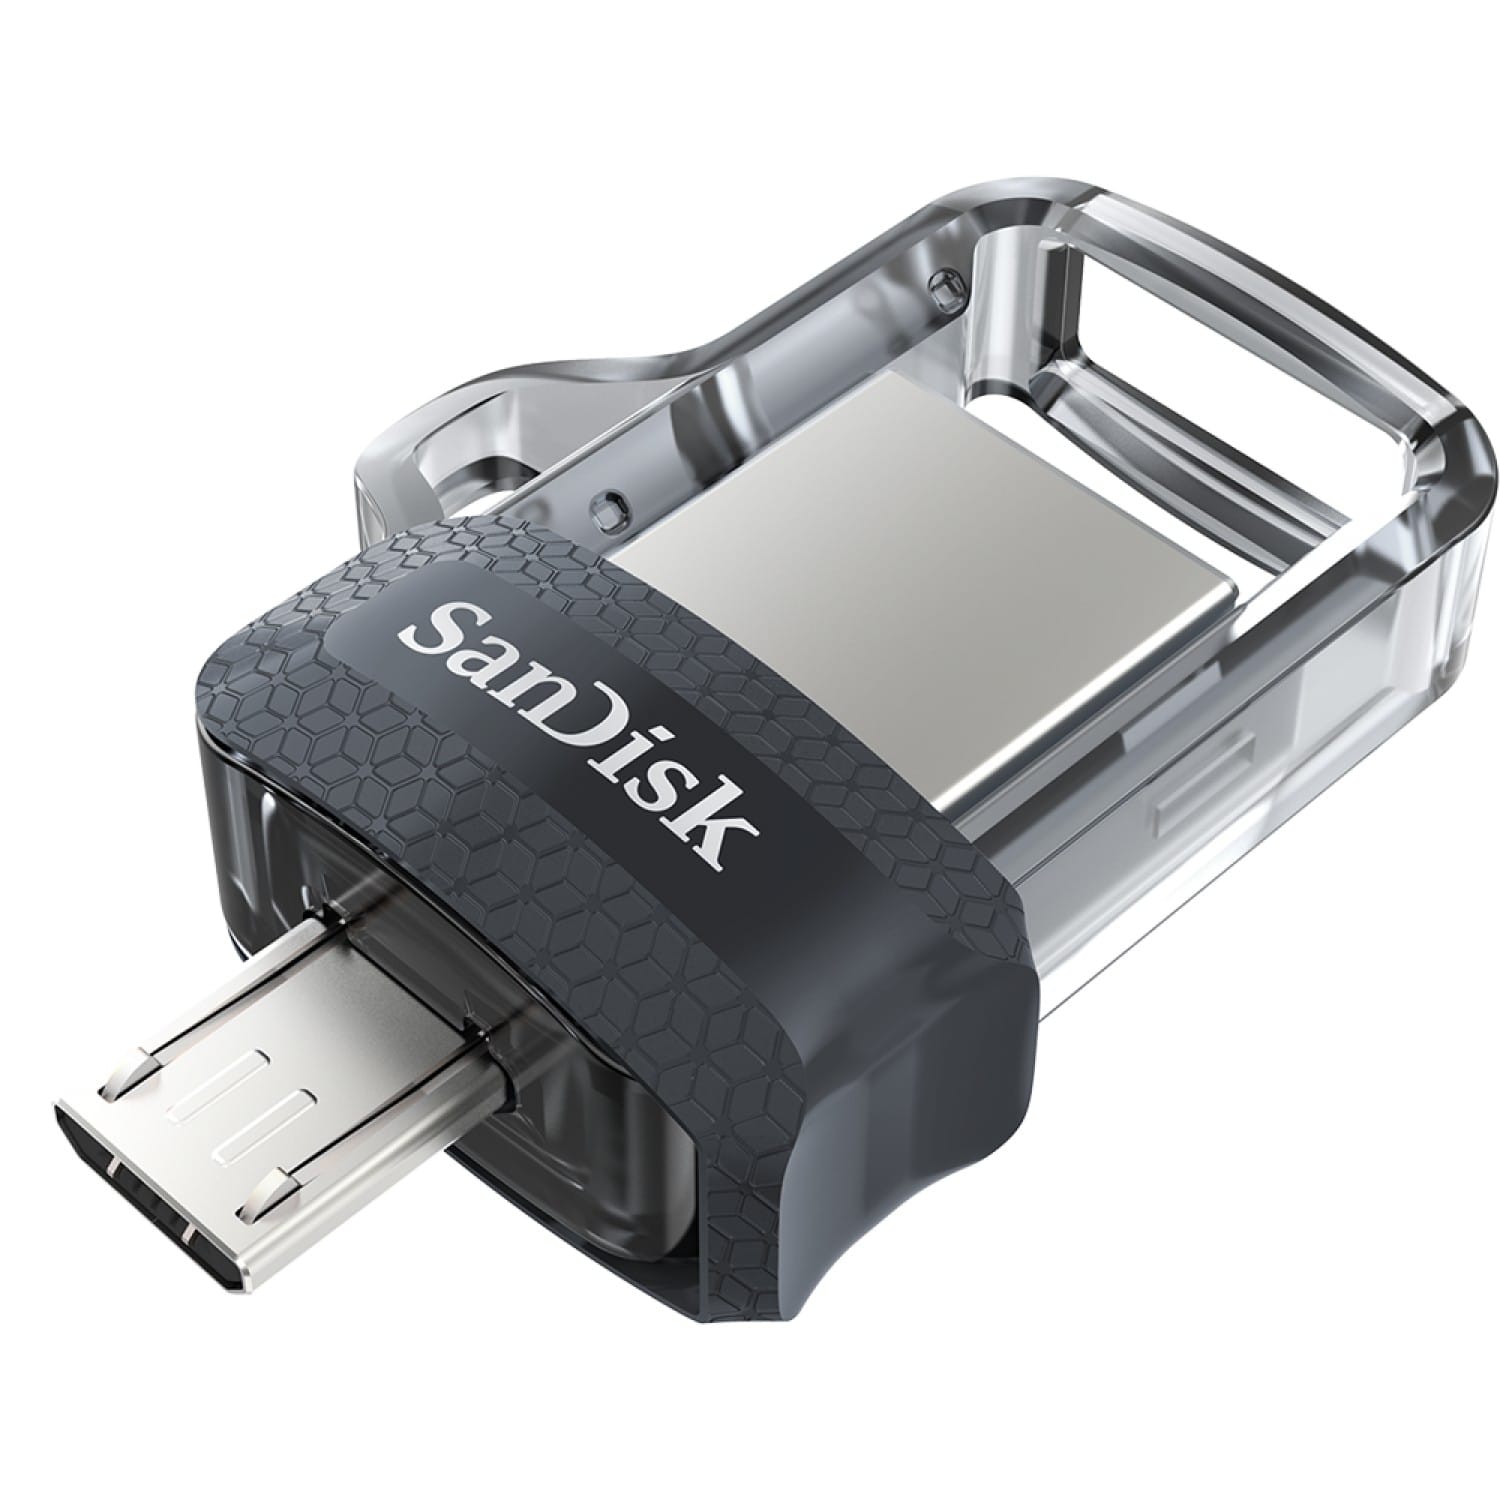 Une clé USB ultra sécurisée